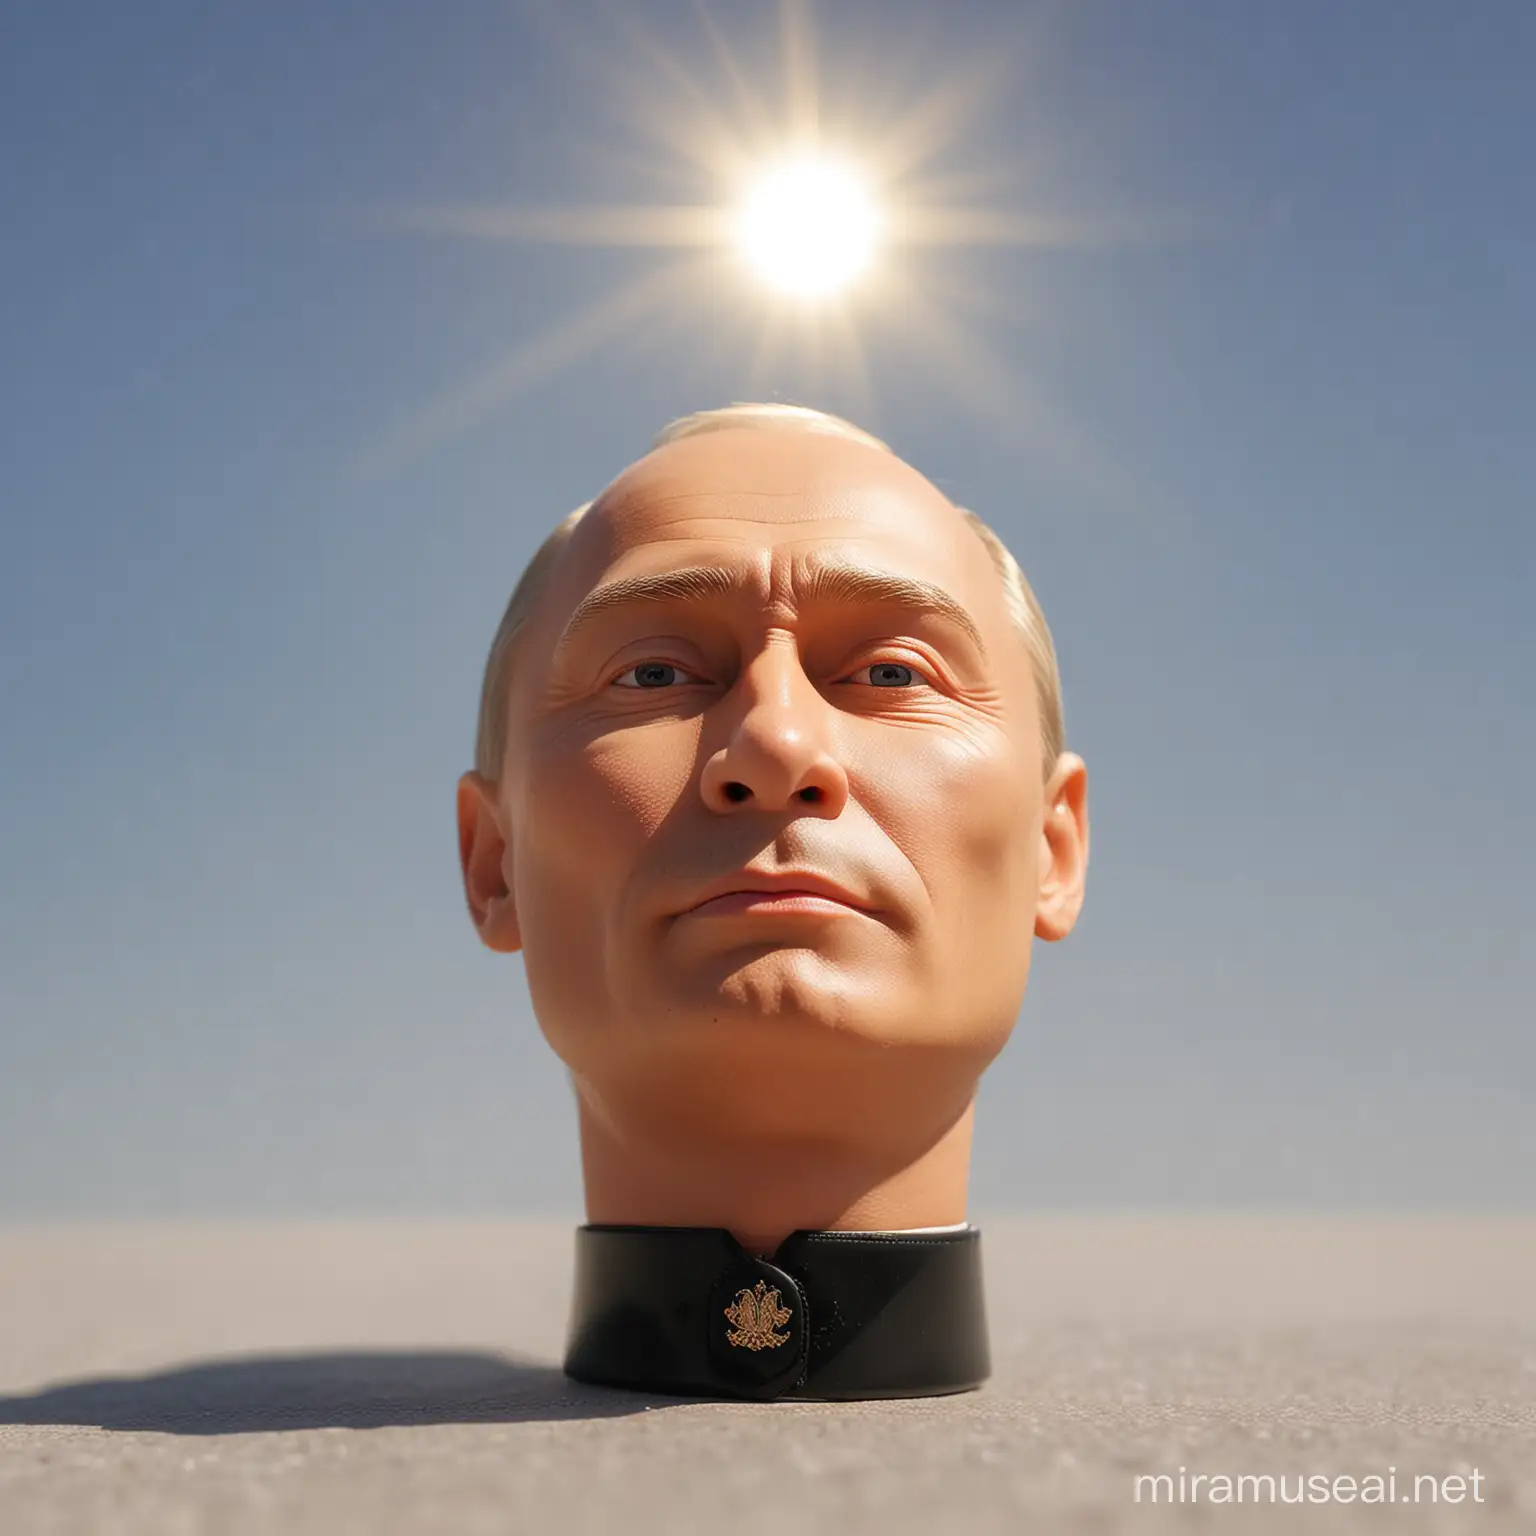 Putin Doll Gazing Upward Toward the Sun